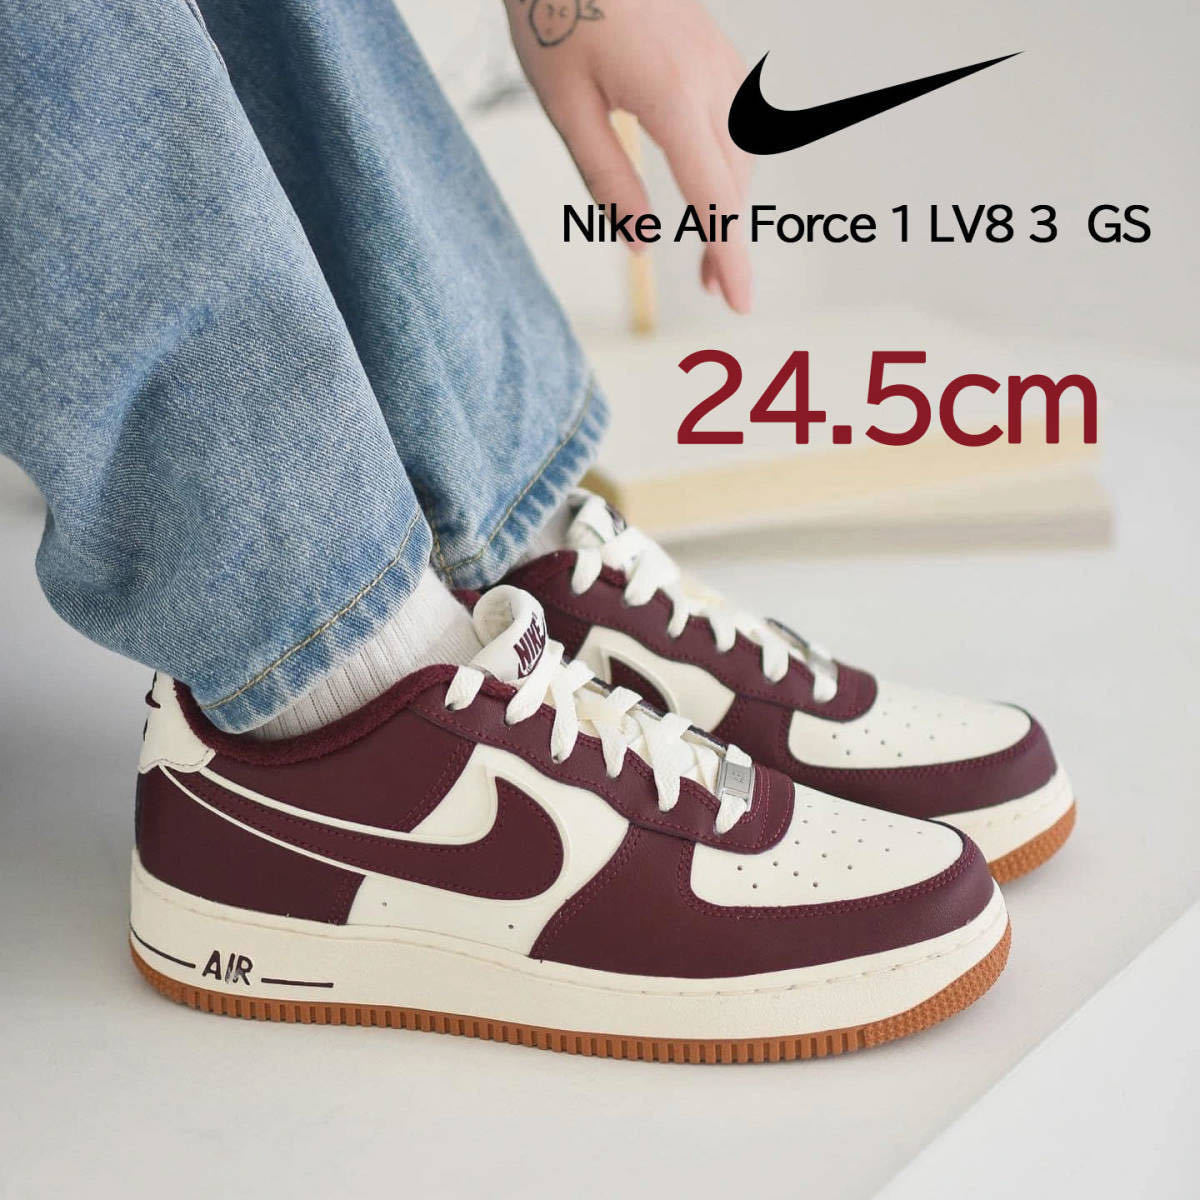 【送料無料】【新品】24.5cm Nike AirForce1 LV8 3 GS ナイキ エア フォース1 LV8 3 GS セイル/ナイトマルーン